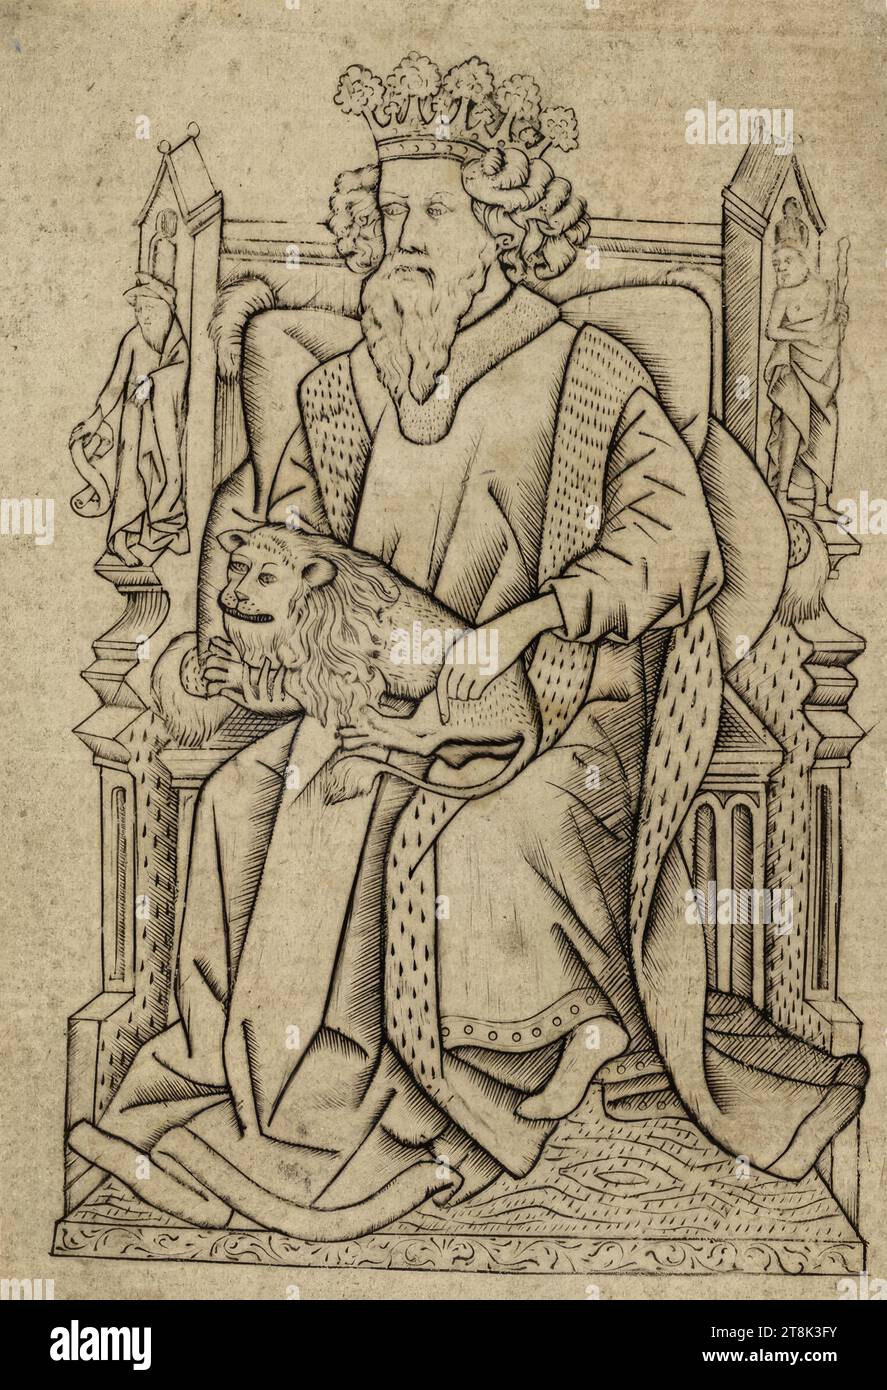 Animal King B, il gioco di carte, Anonimo, maestro di carte da gioco, attivo intorno al 1430-1450 sull'alto Reno, intorno al 1440-1450, stampa, incisione in rame, piatto: 13,5 x 9,6 cm Foto Stock